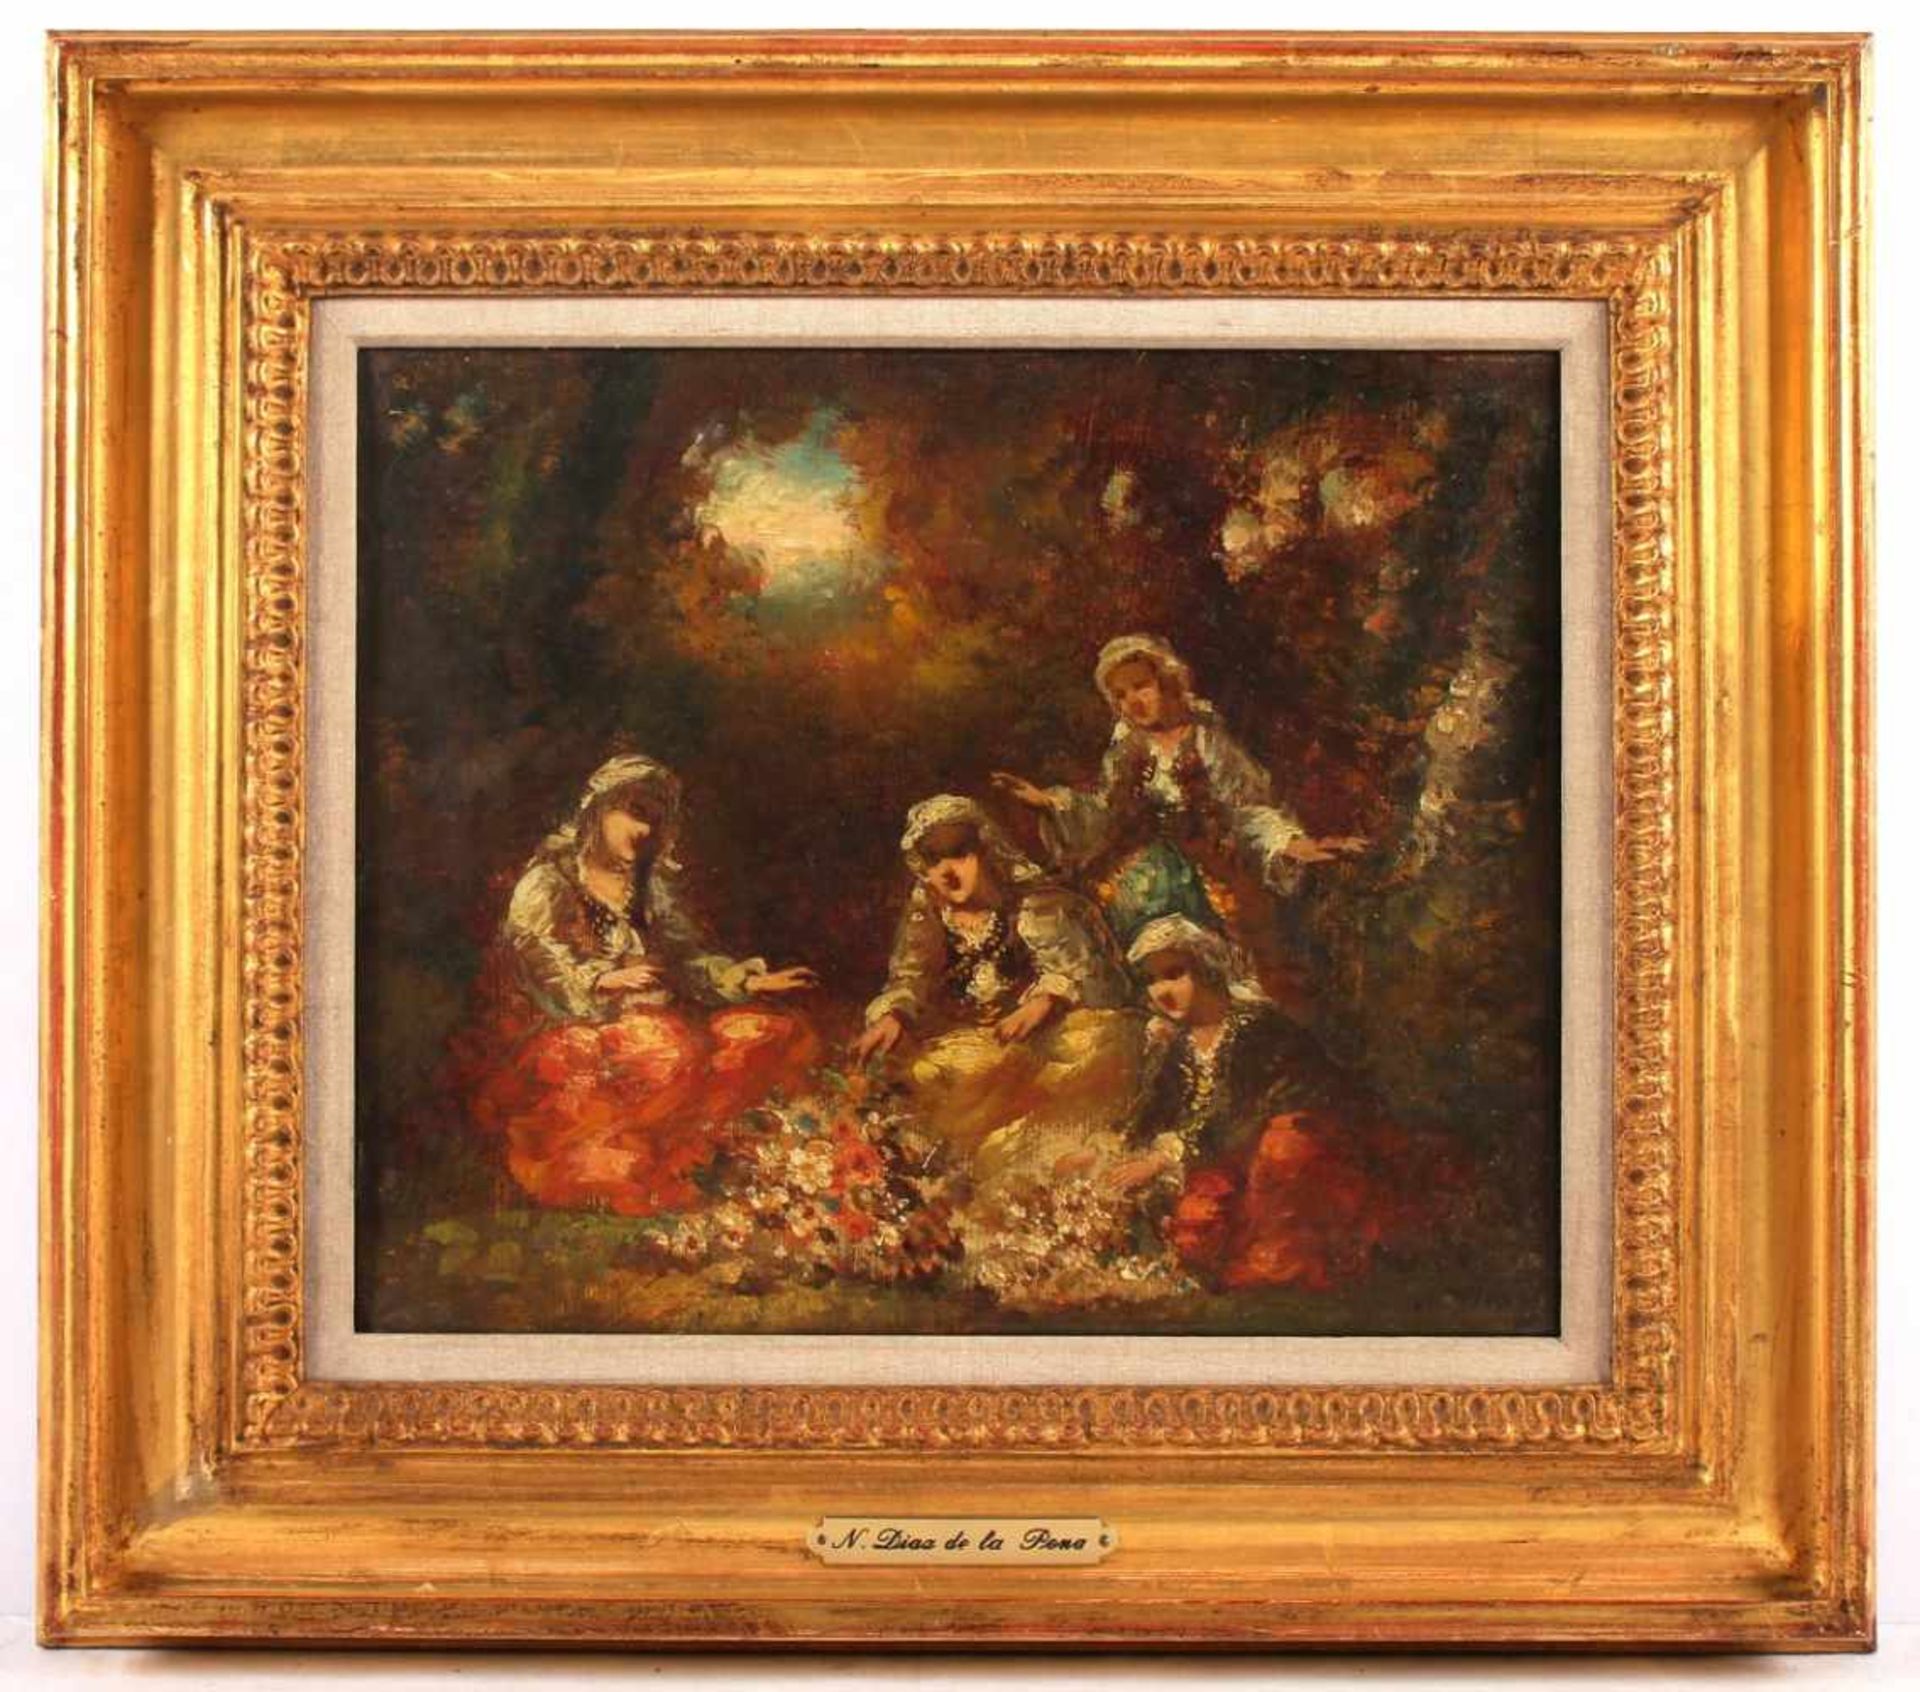 DIAZ DE LA PENA, Narcisse Virgile (1807-1876), zugeschrieben, "Vier Frauen im Park", Öl/Lwd., 22,5 x - Image 2 of 4